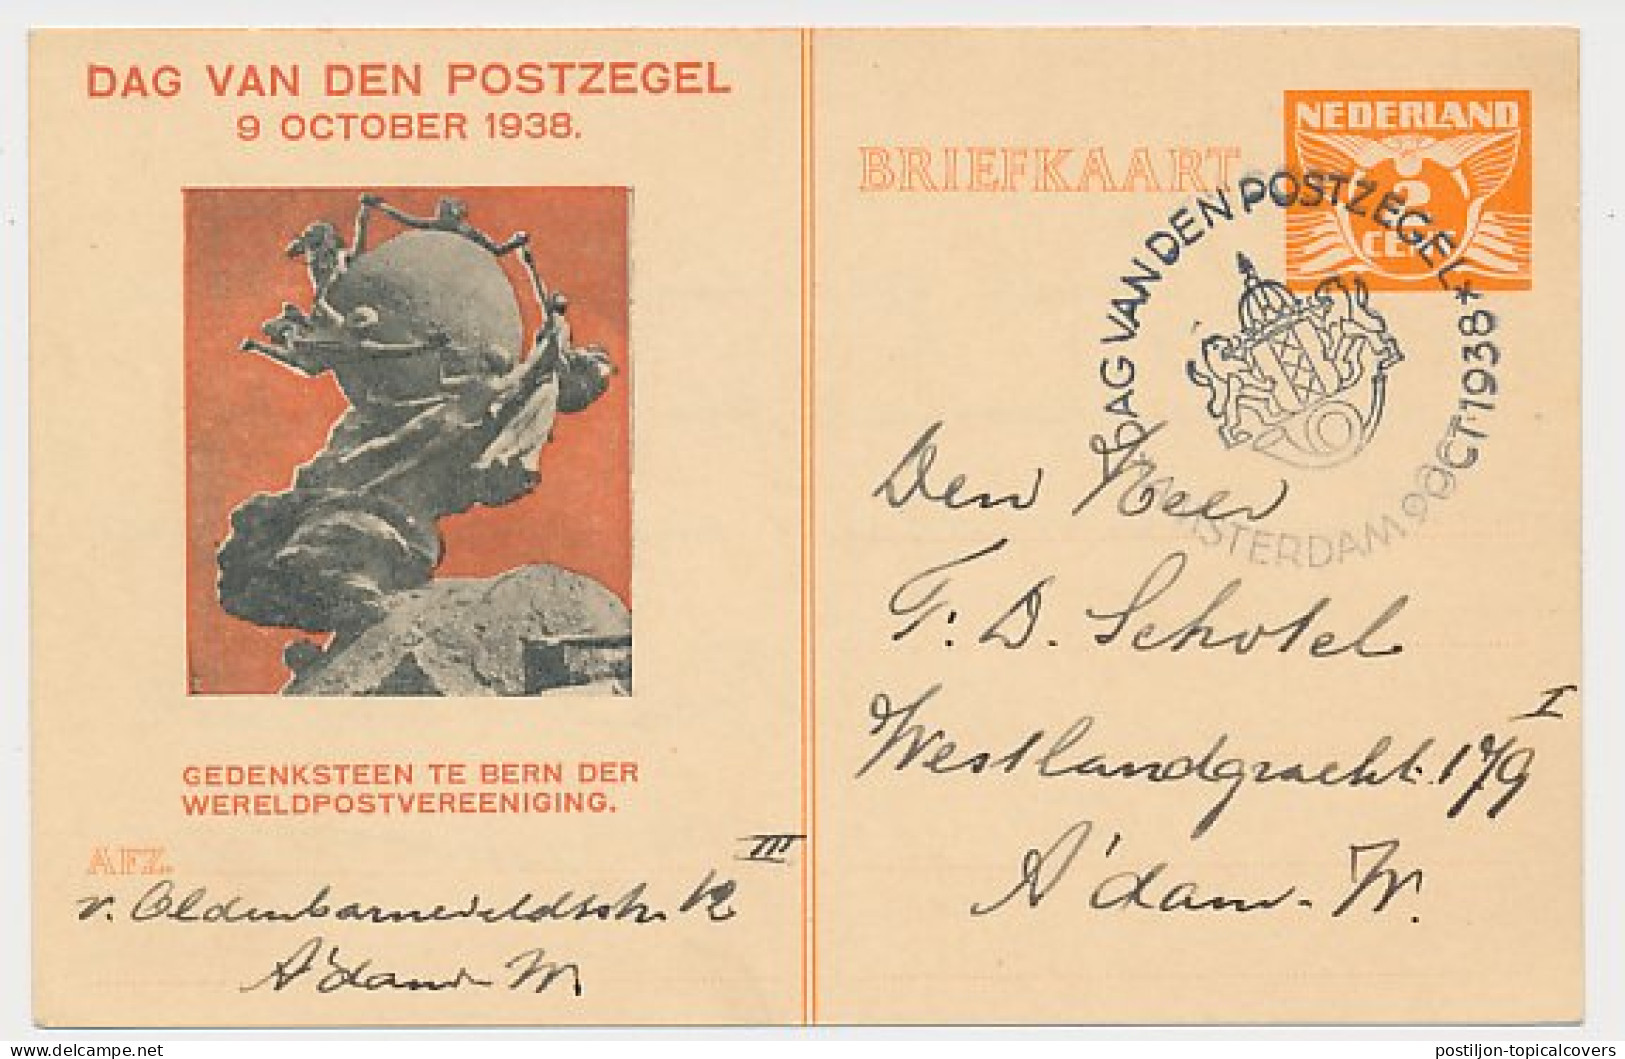 Particuliere Briefkaart Geuzendam FIL13 - Postal Stationery